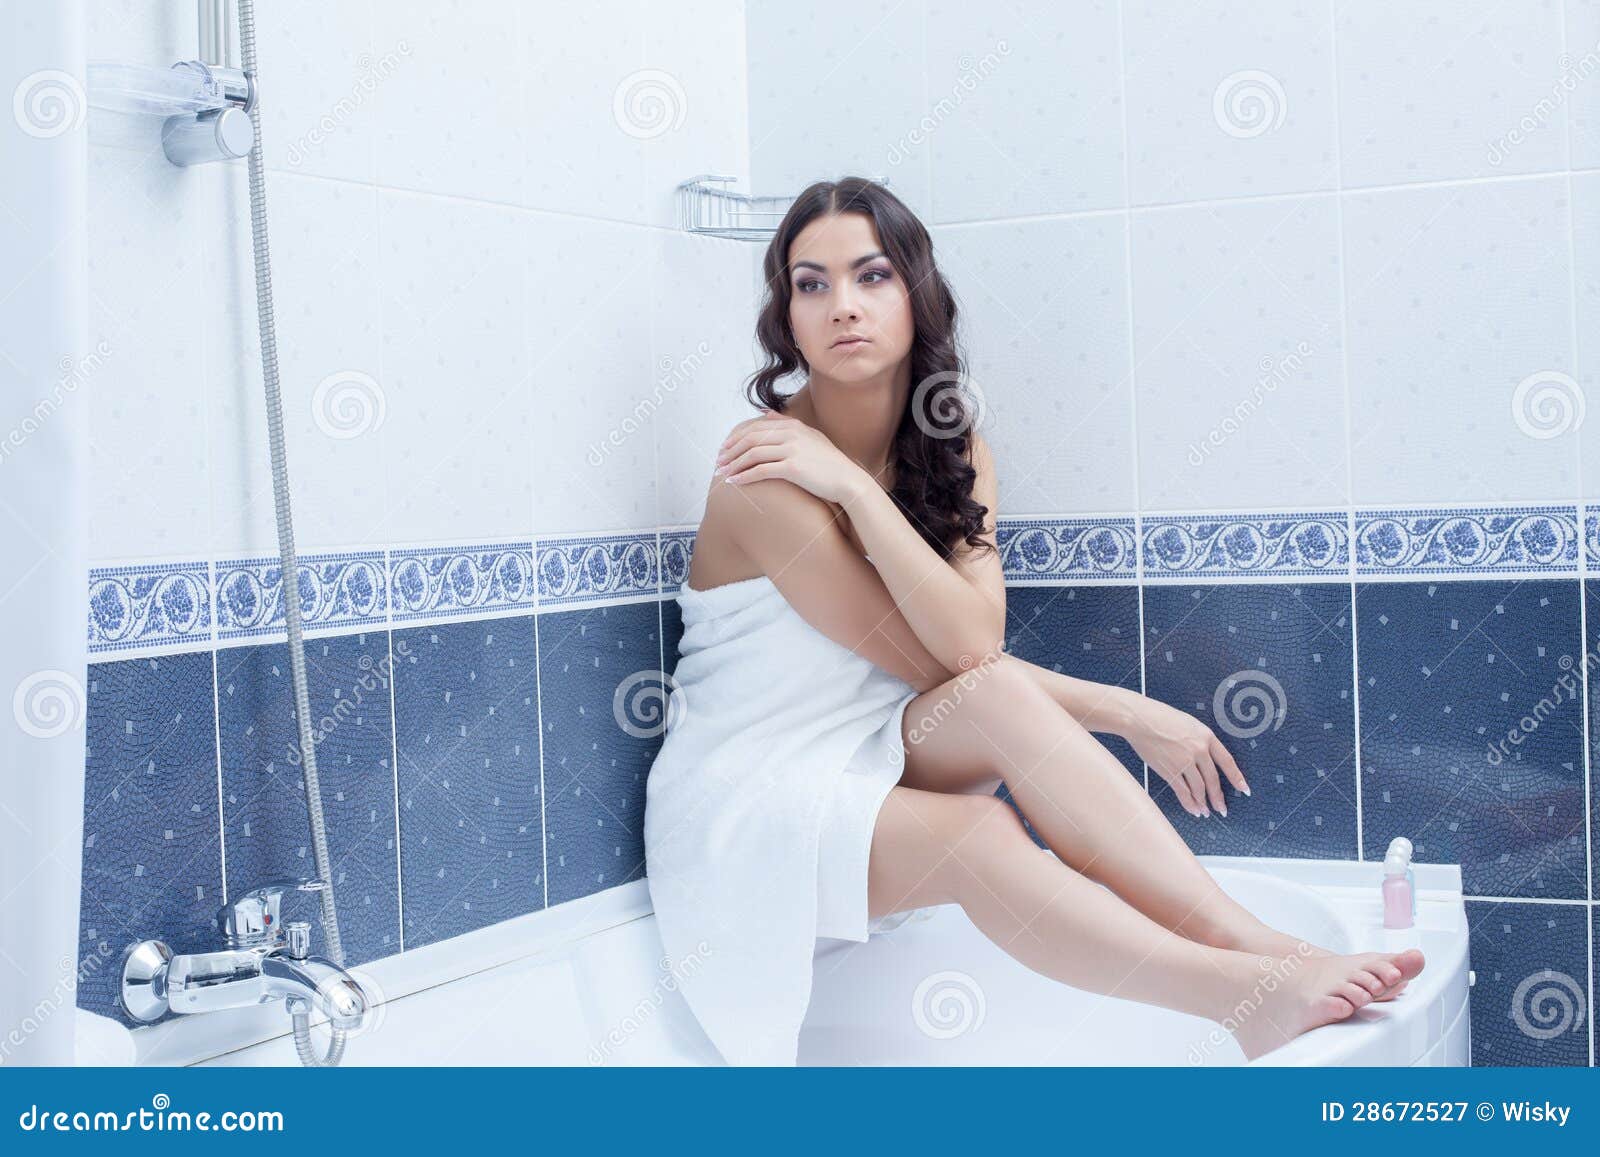 Жена после ванны. Женщина сидит в ванной. Девушка сидит в ванной. Девушка в полотенце сидит на ванной. Девушка сидит на ванной фотосессия.